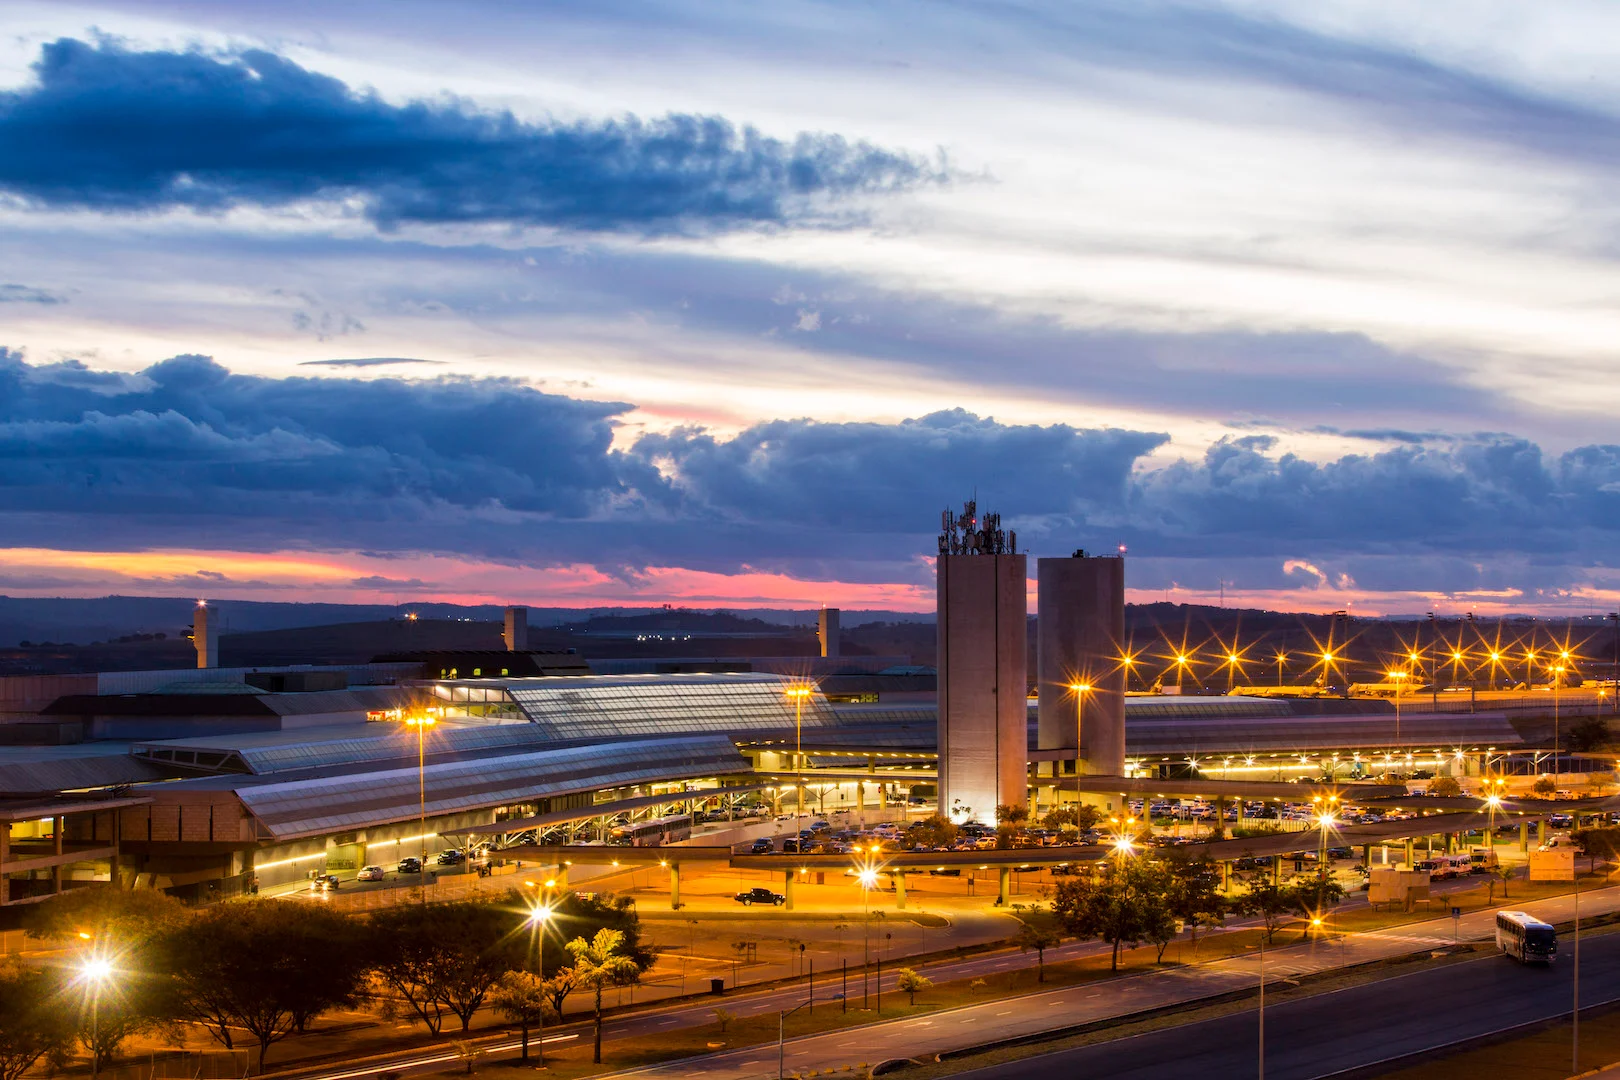 Aeroporto Internacional de Belo Horizonte é reconhecido por reduzir emissões de carbono